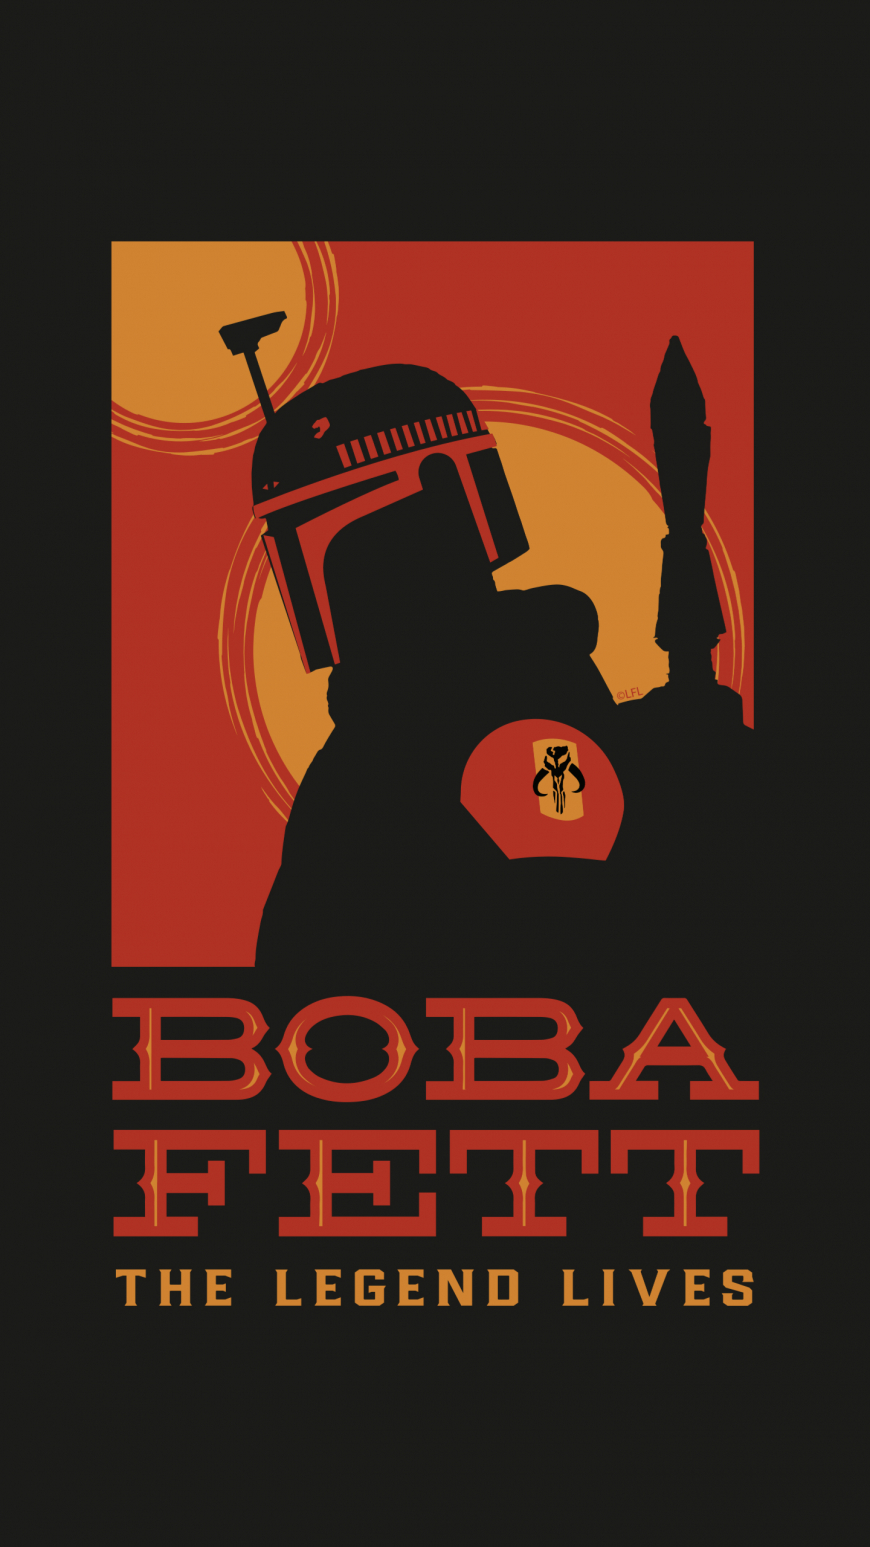 Book of Boba Fett mobile wallpaper